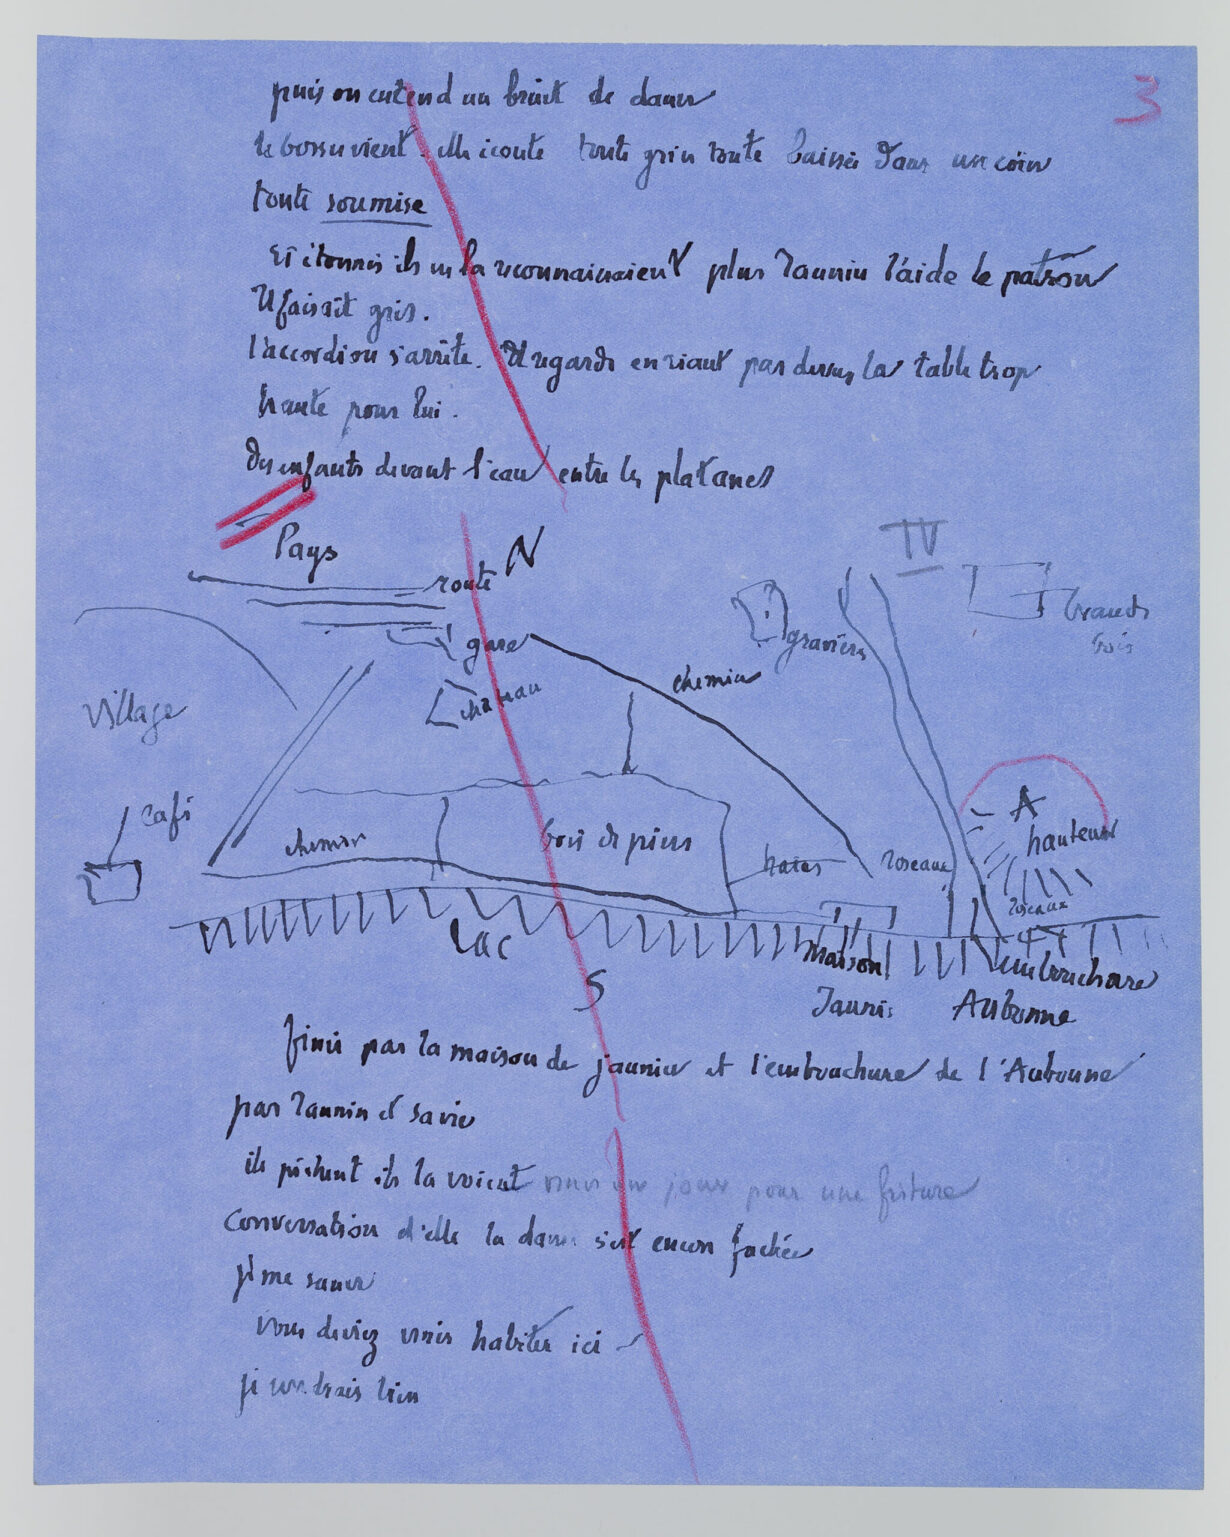 Sur un papier bleu, Ramuz a écrit des notes préparatoires, entrecoupées d'un plan représentant le lieu de l'action. Le tout est barré de traits rouges.